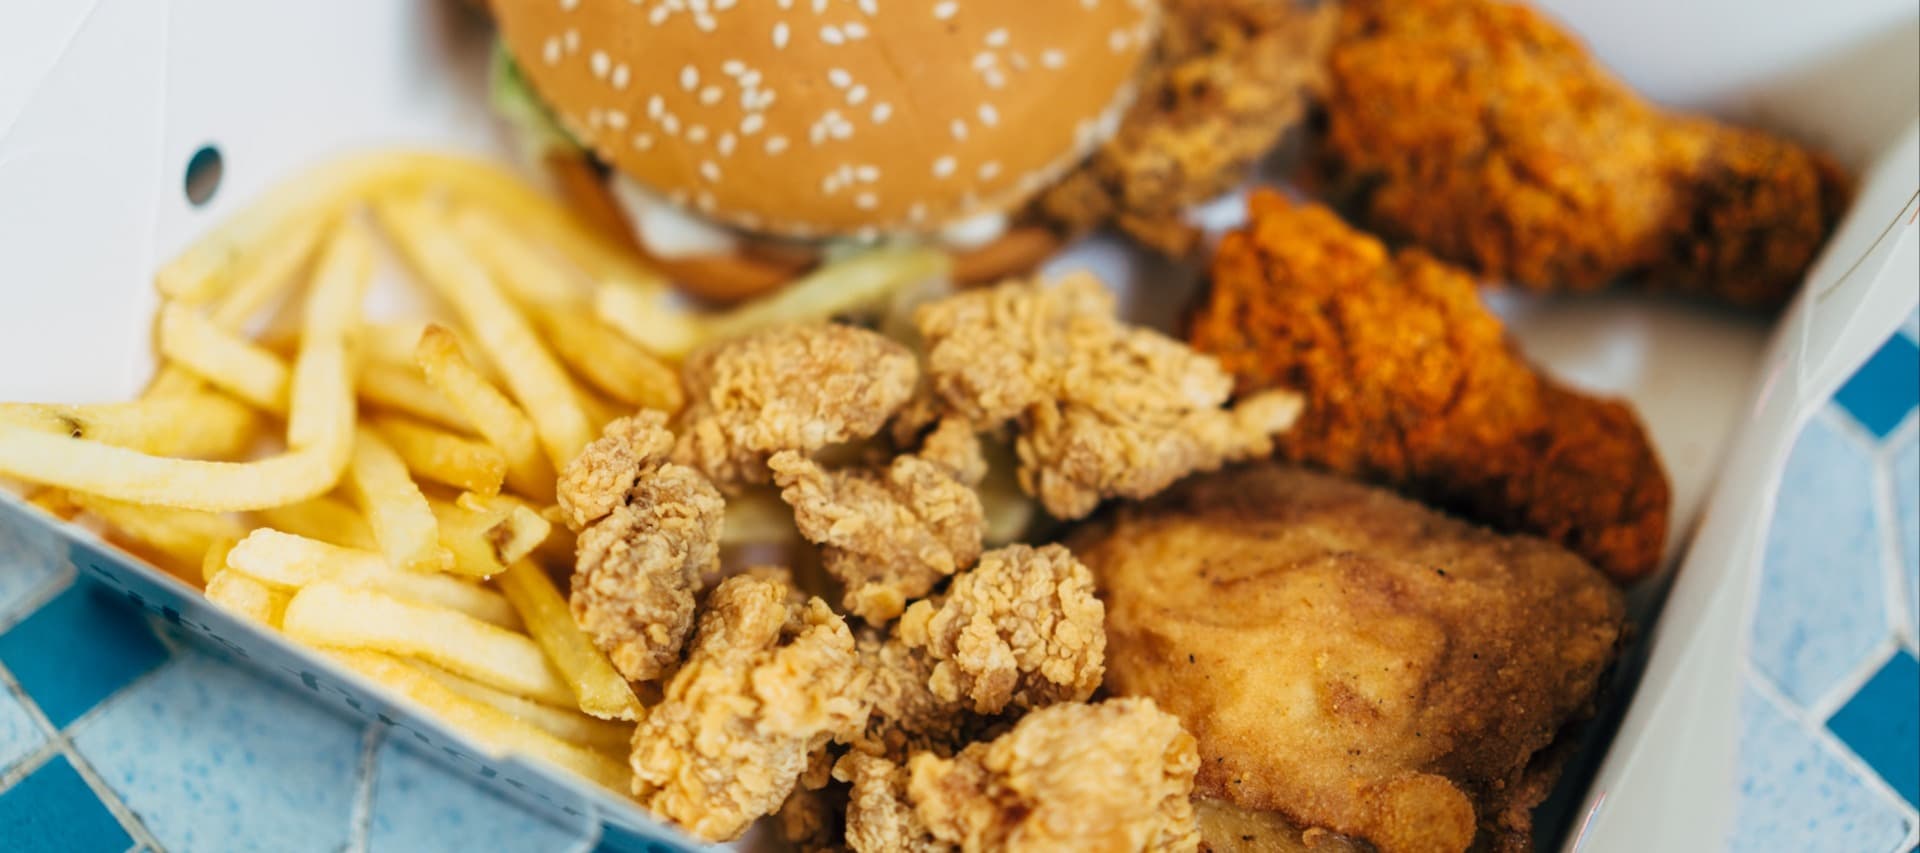 Фото новости: "KFC и Rostic’s подняли цены на свое меню"